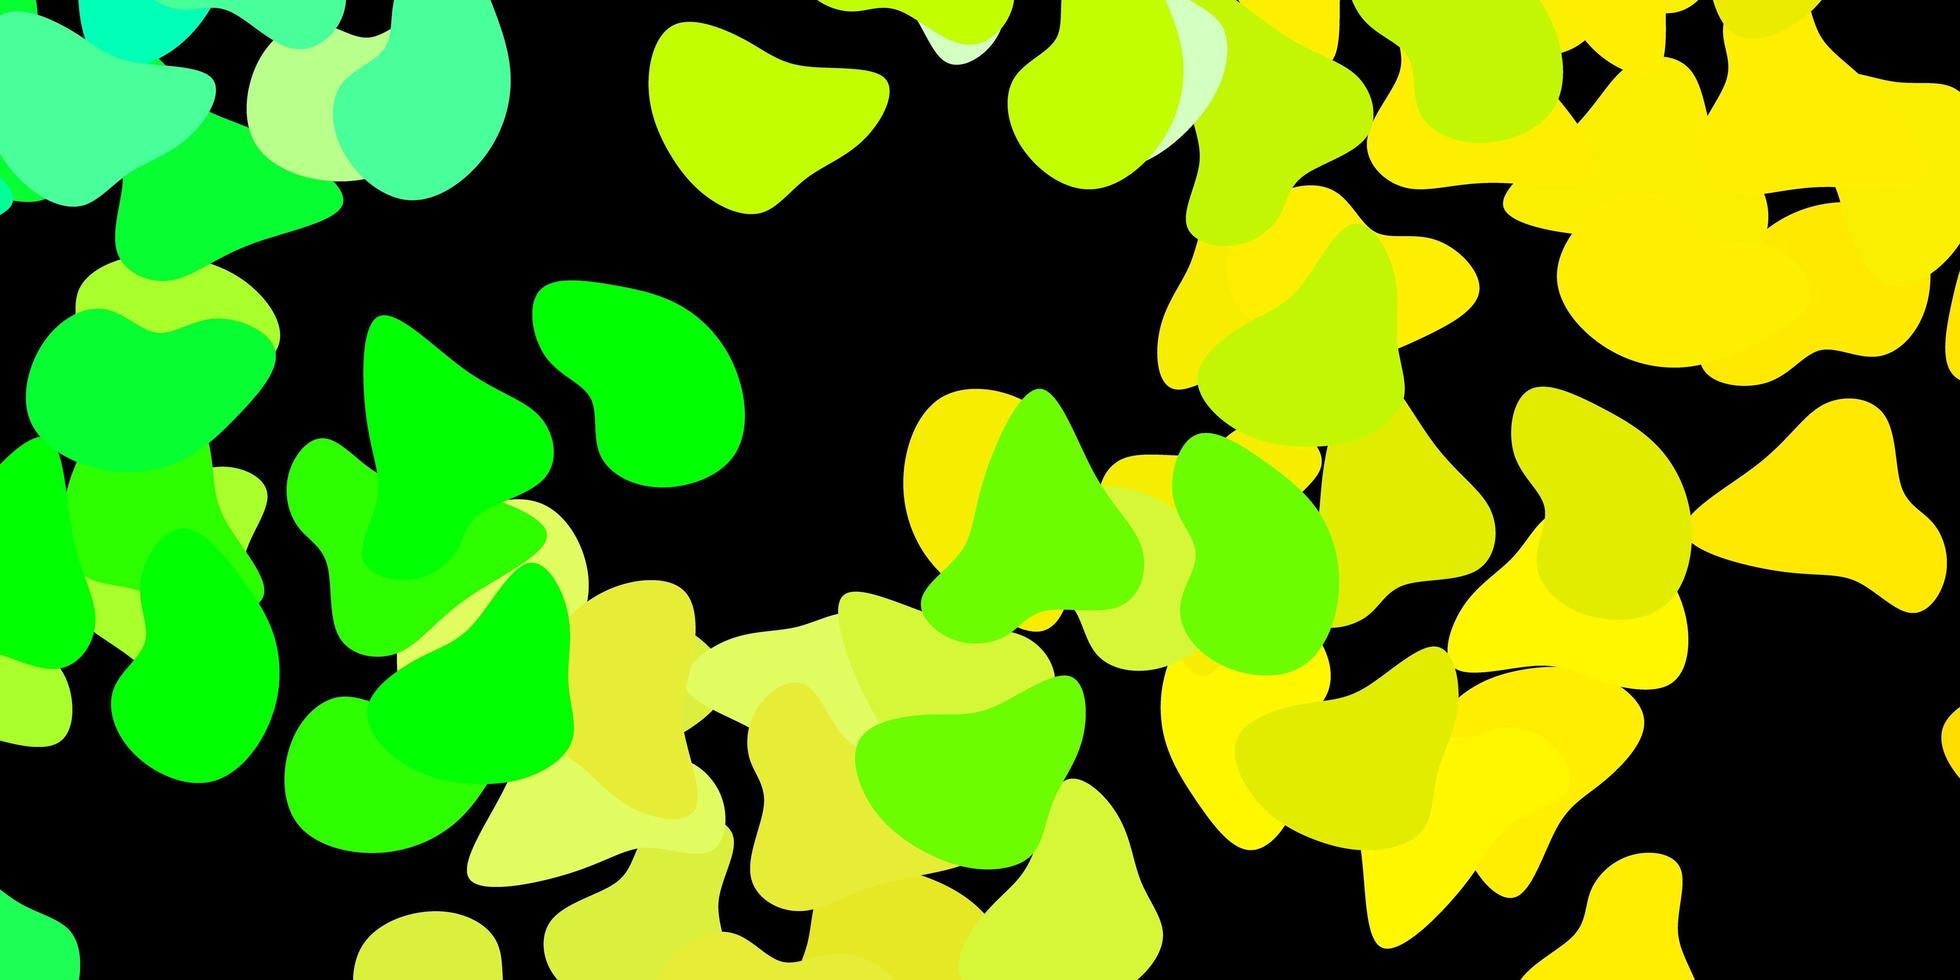 sfondo vettoriale verde scuro, giallo con forme casuali.